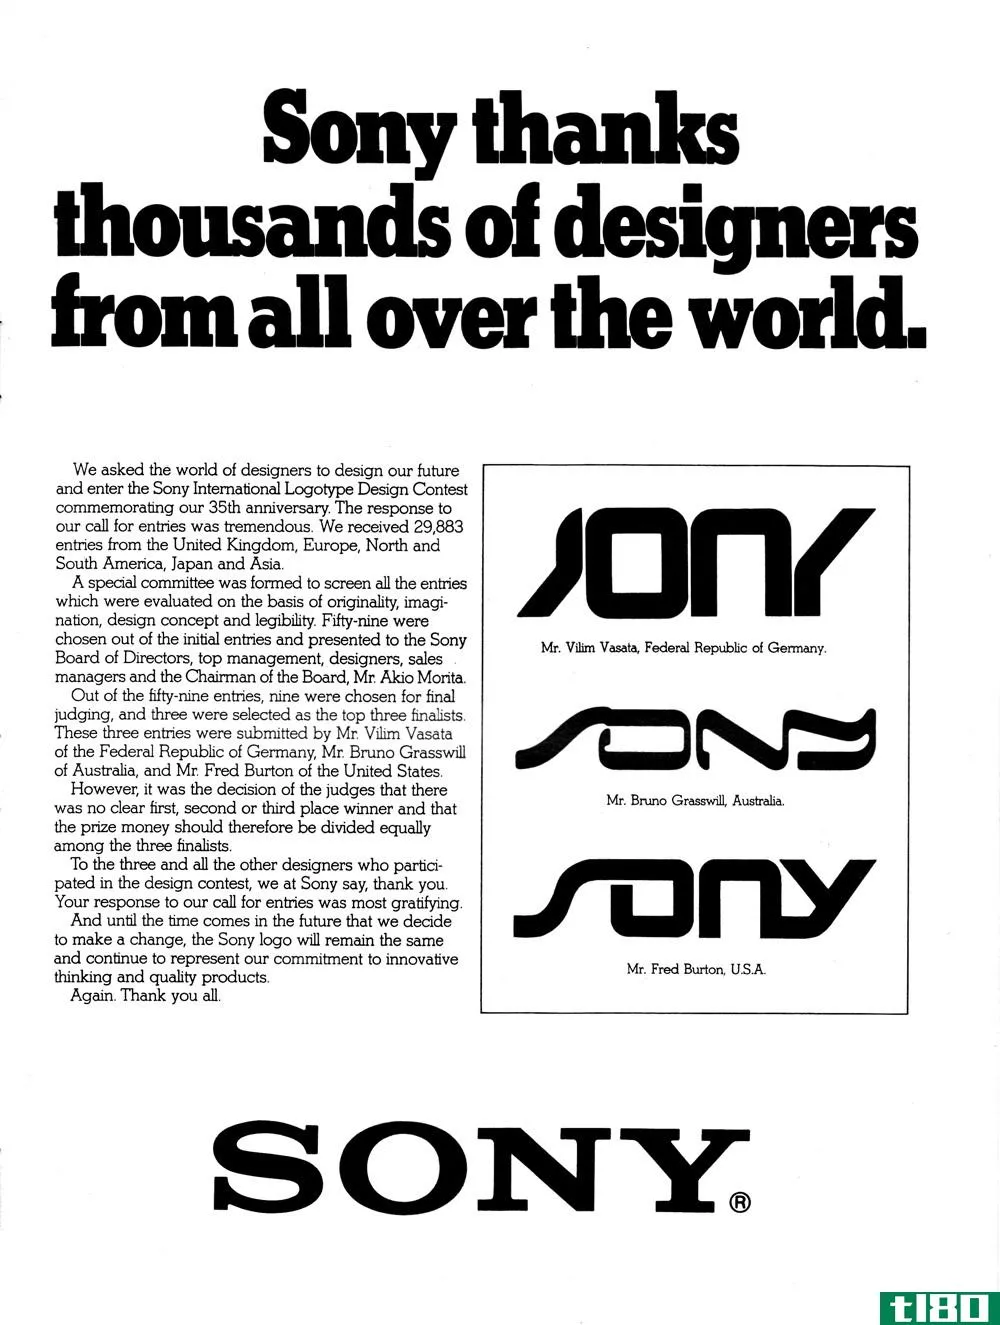 索尼在1981年要求公众重新设计它的商标。结果没有成功。